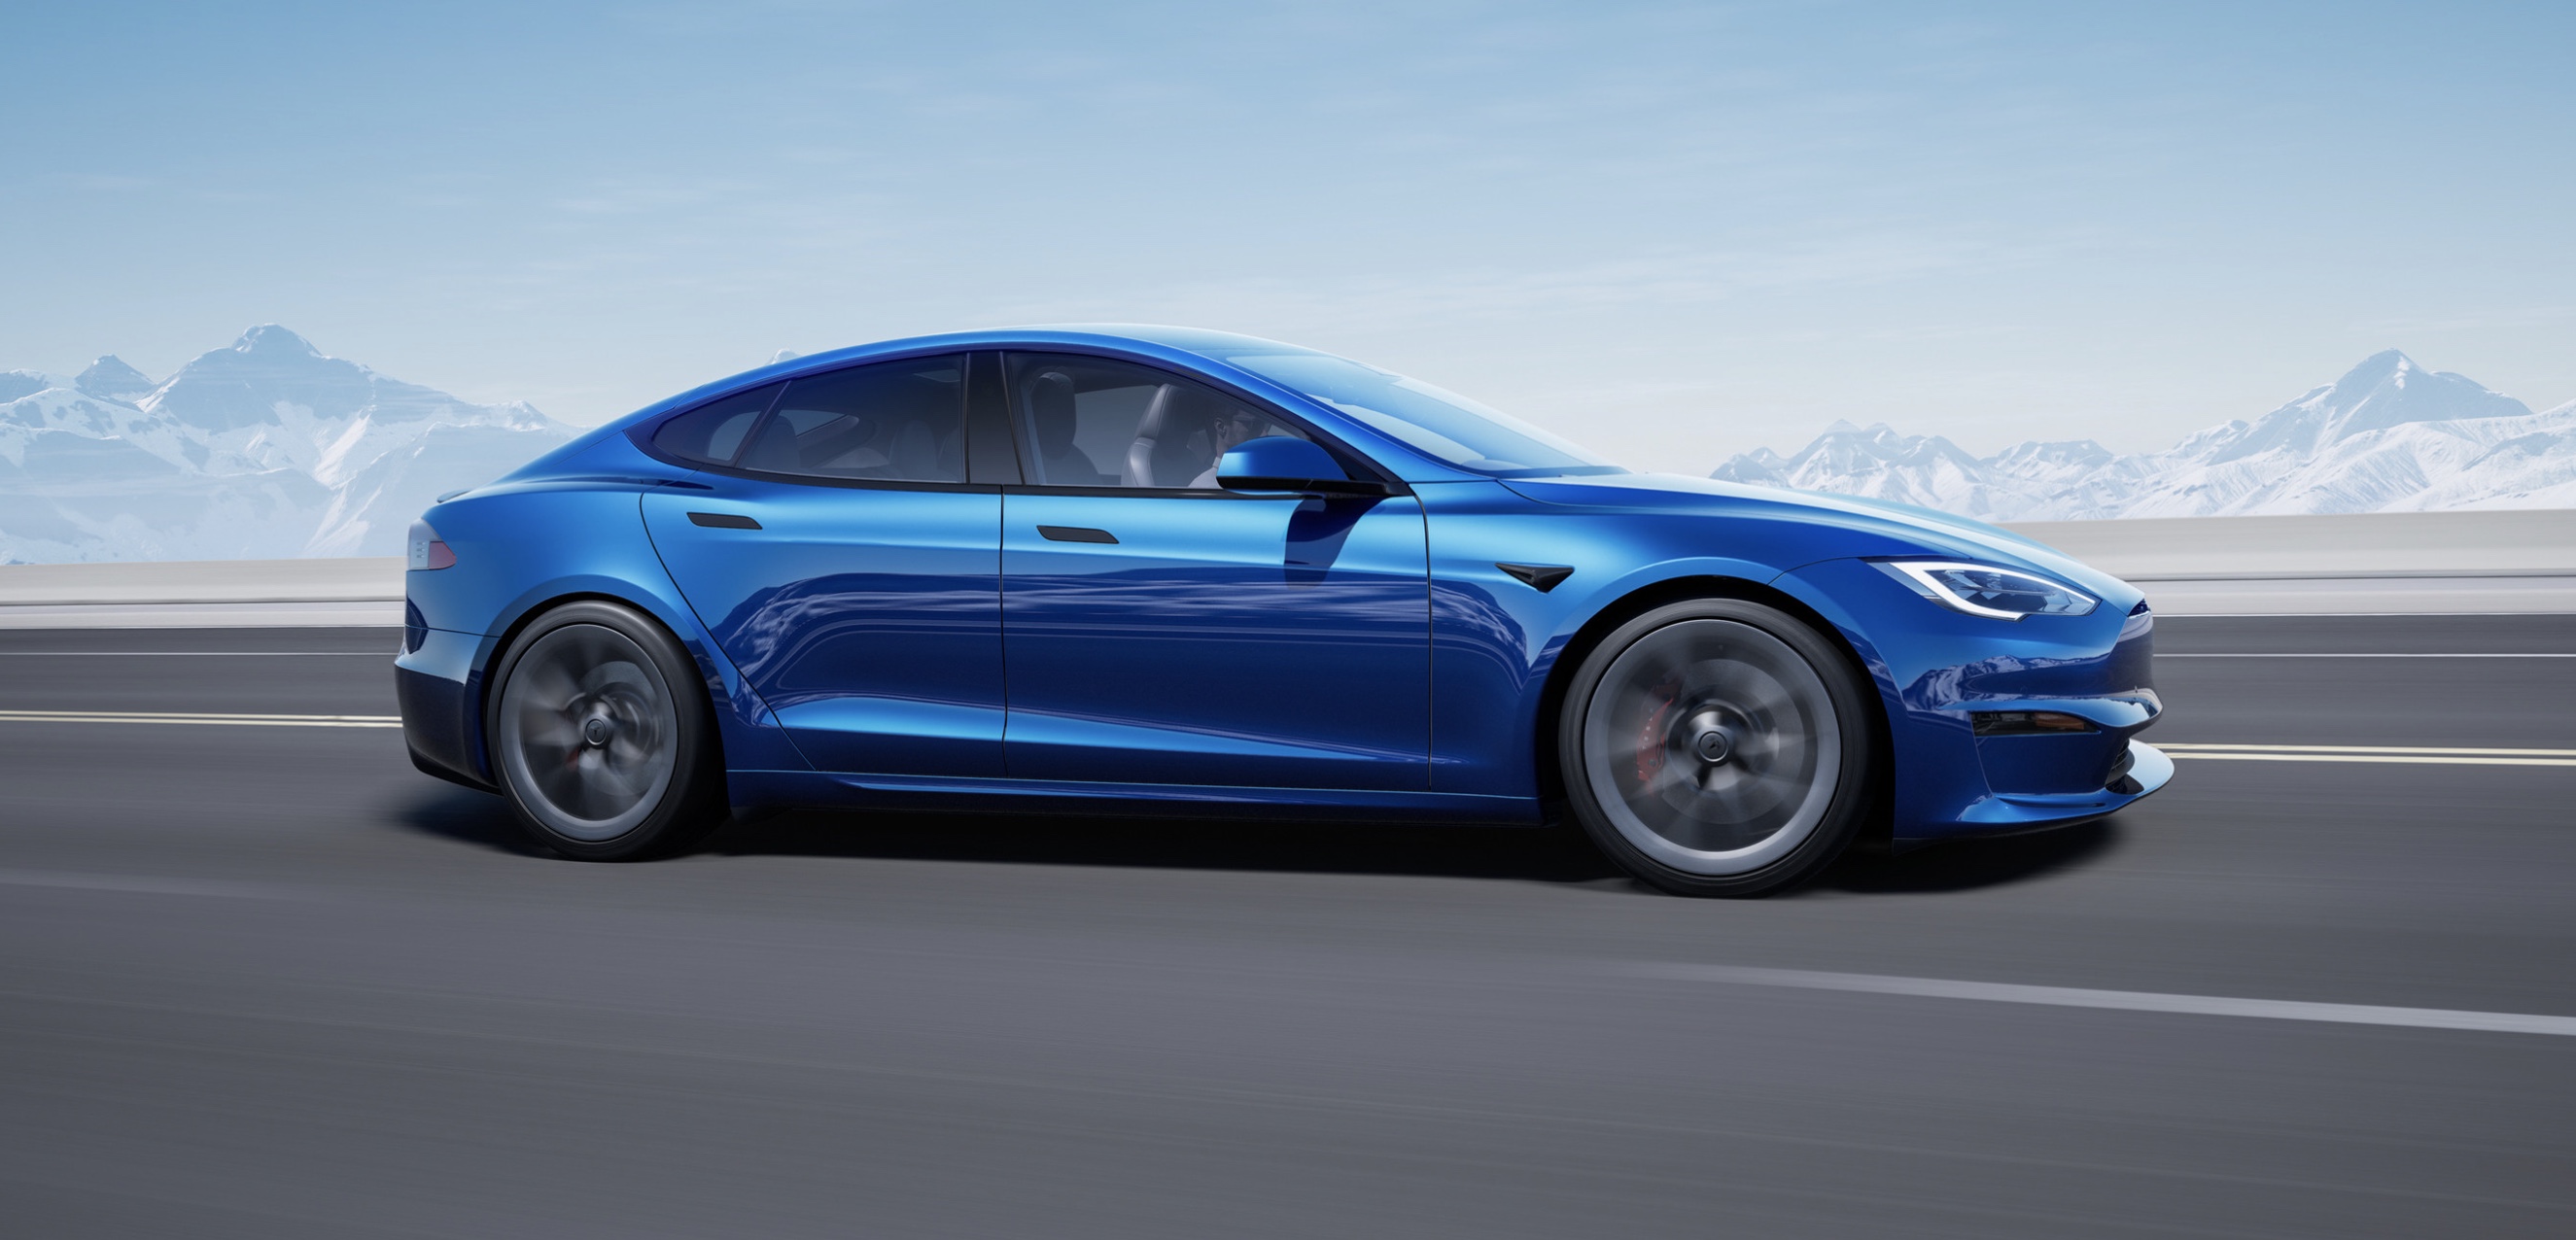 Tesla's new Model S gets official EPA range showing improvement in efficiency - Electrek